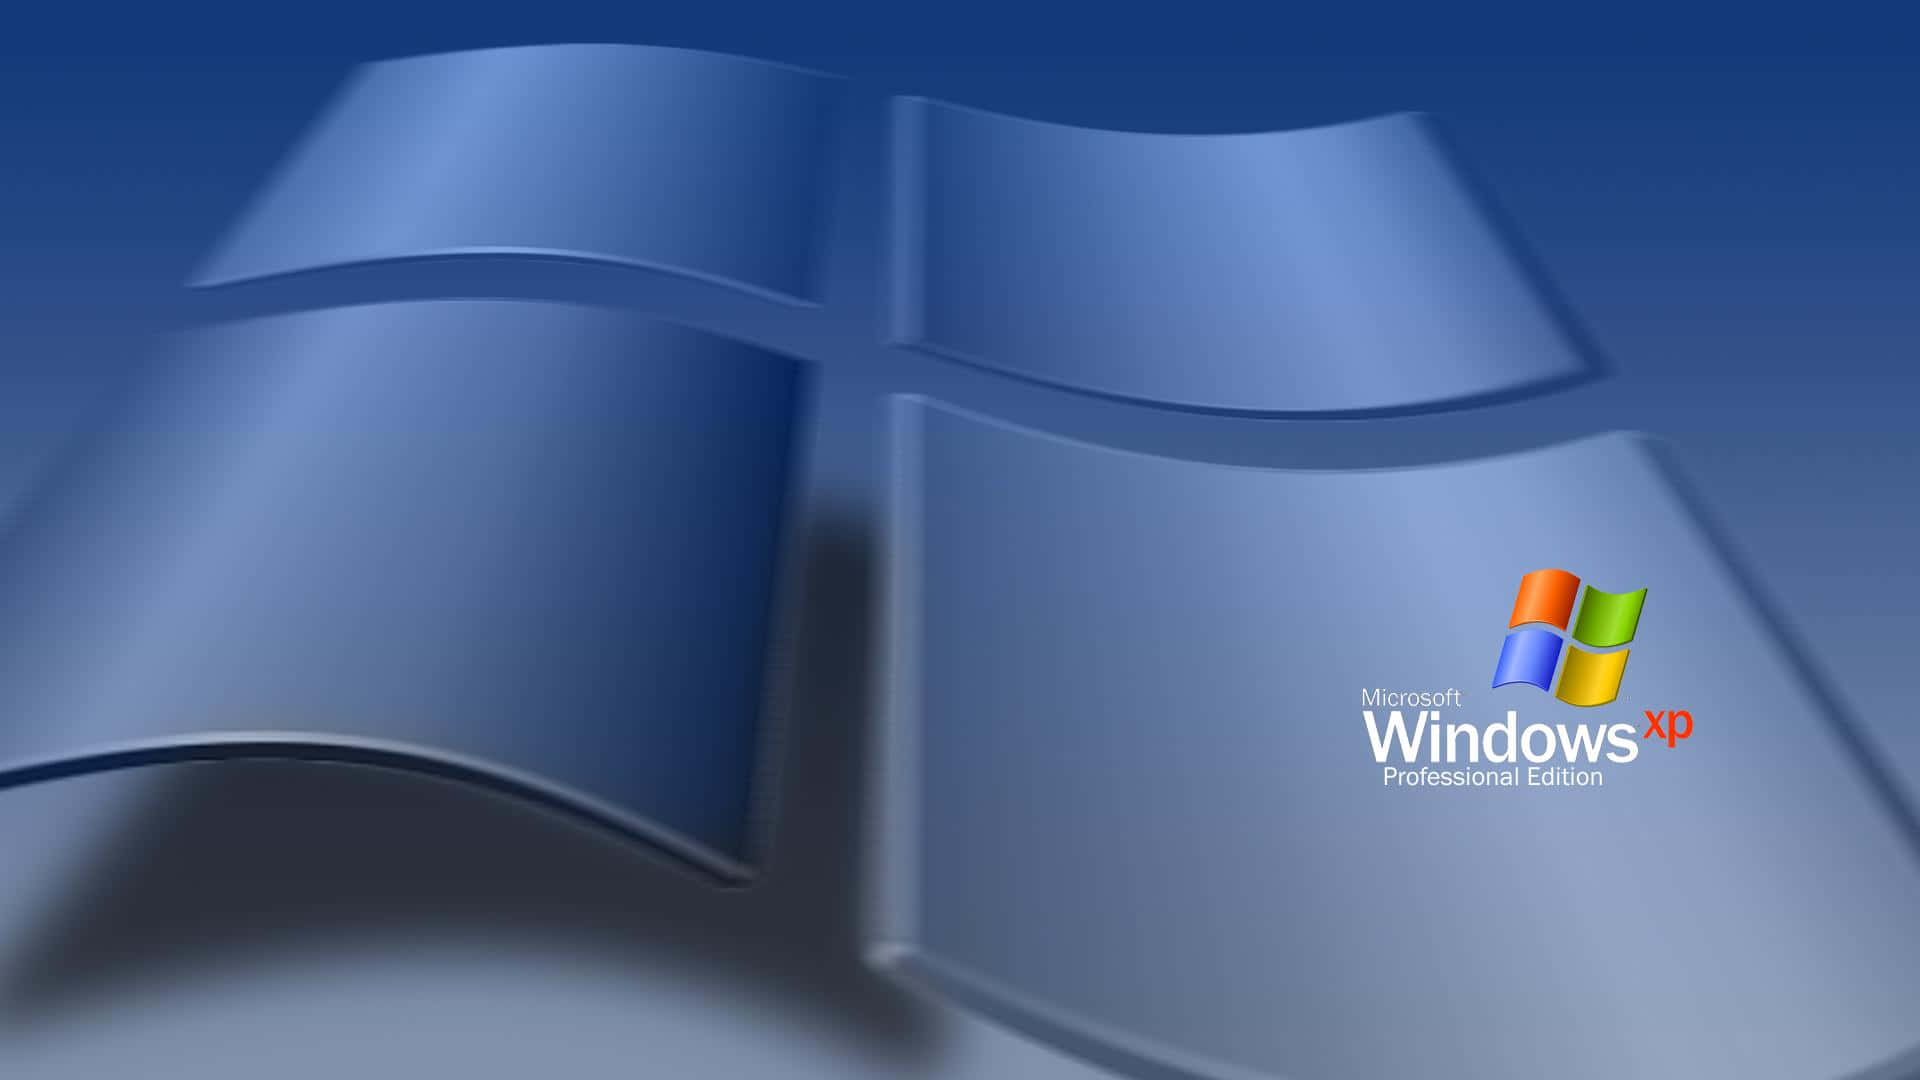 Njutav Den Användarvänliga Elegansen I Windows Xp.